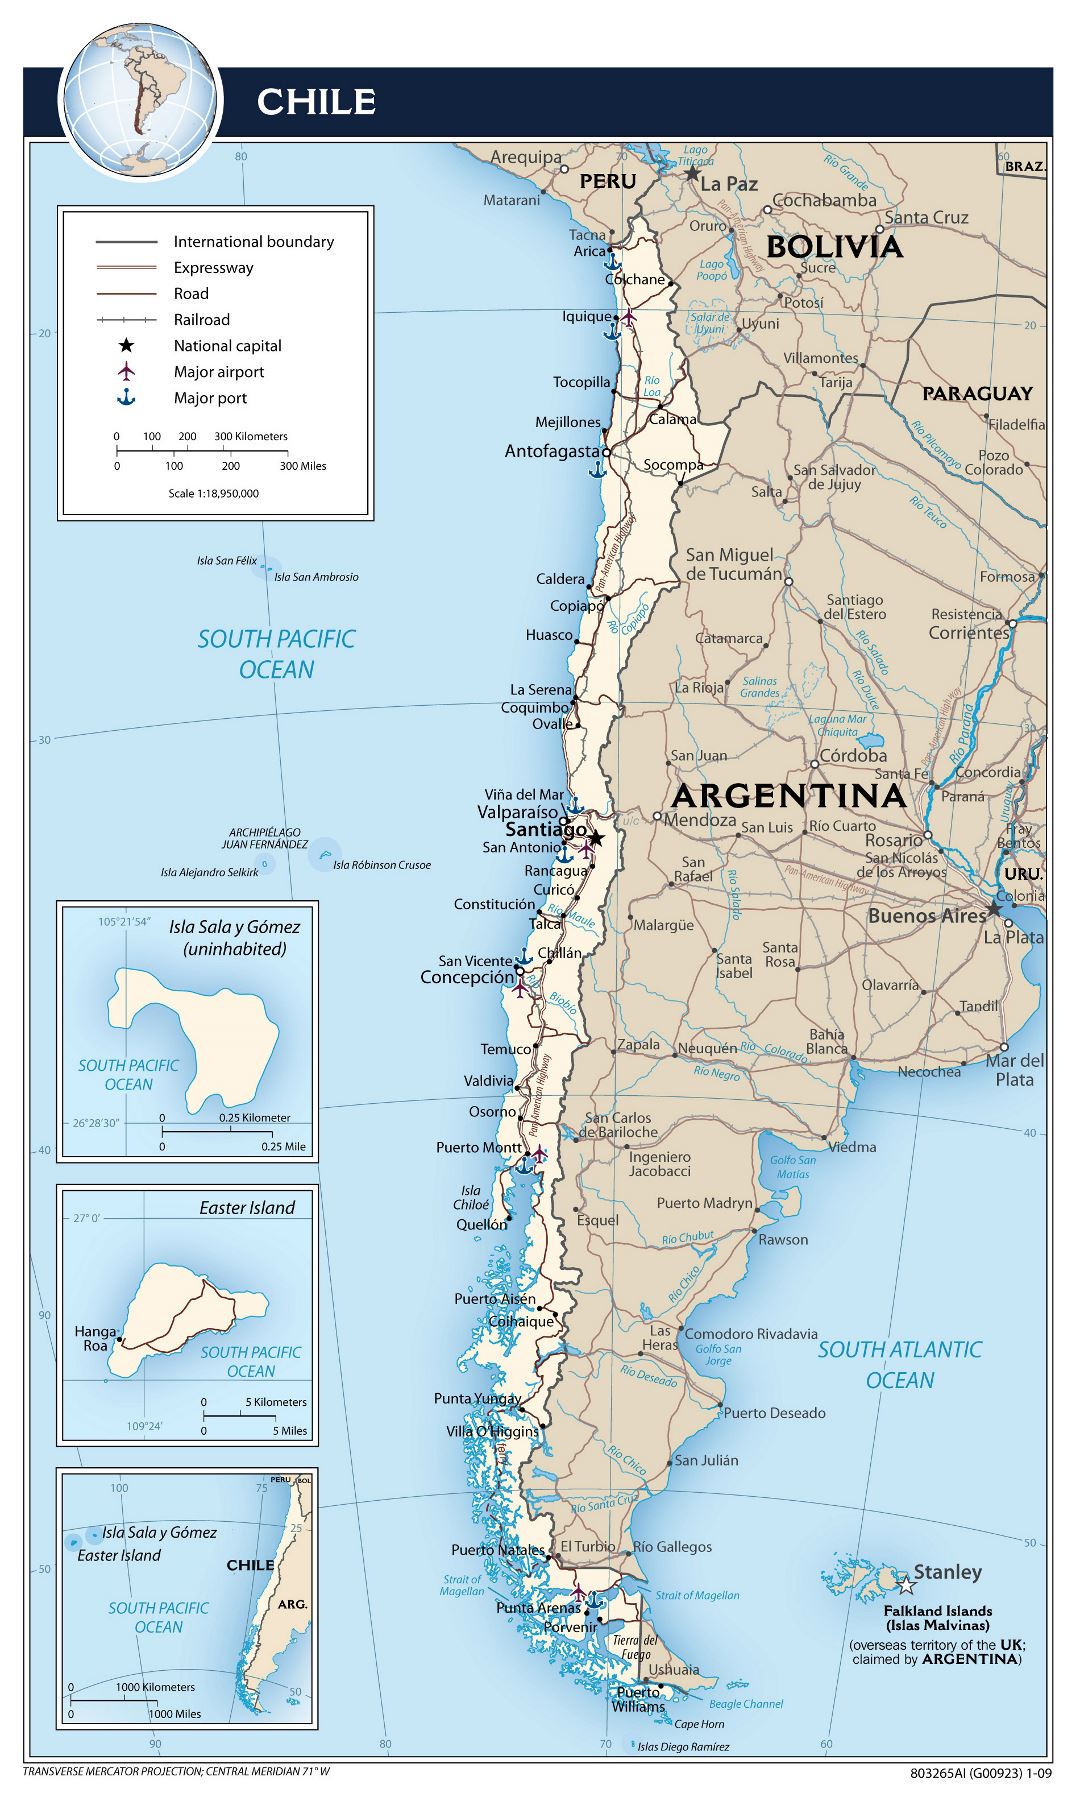 Большая детальная политическая карта Чили с дорогами, городами, аэропортами и морскими портами - 2009